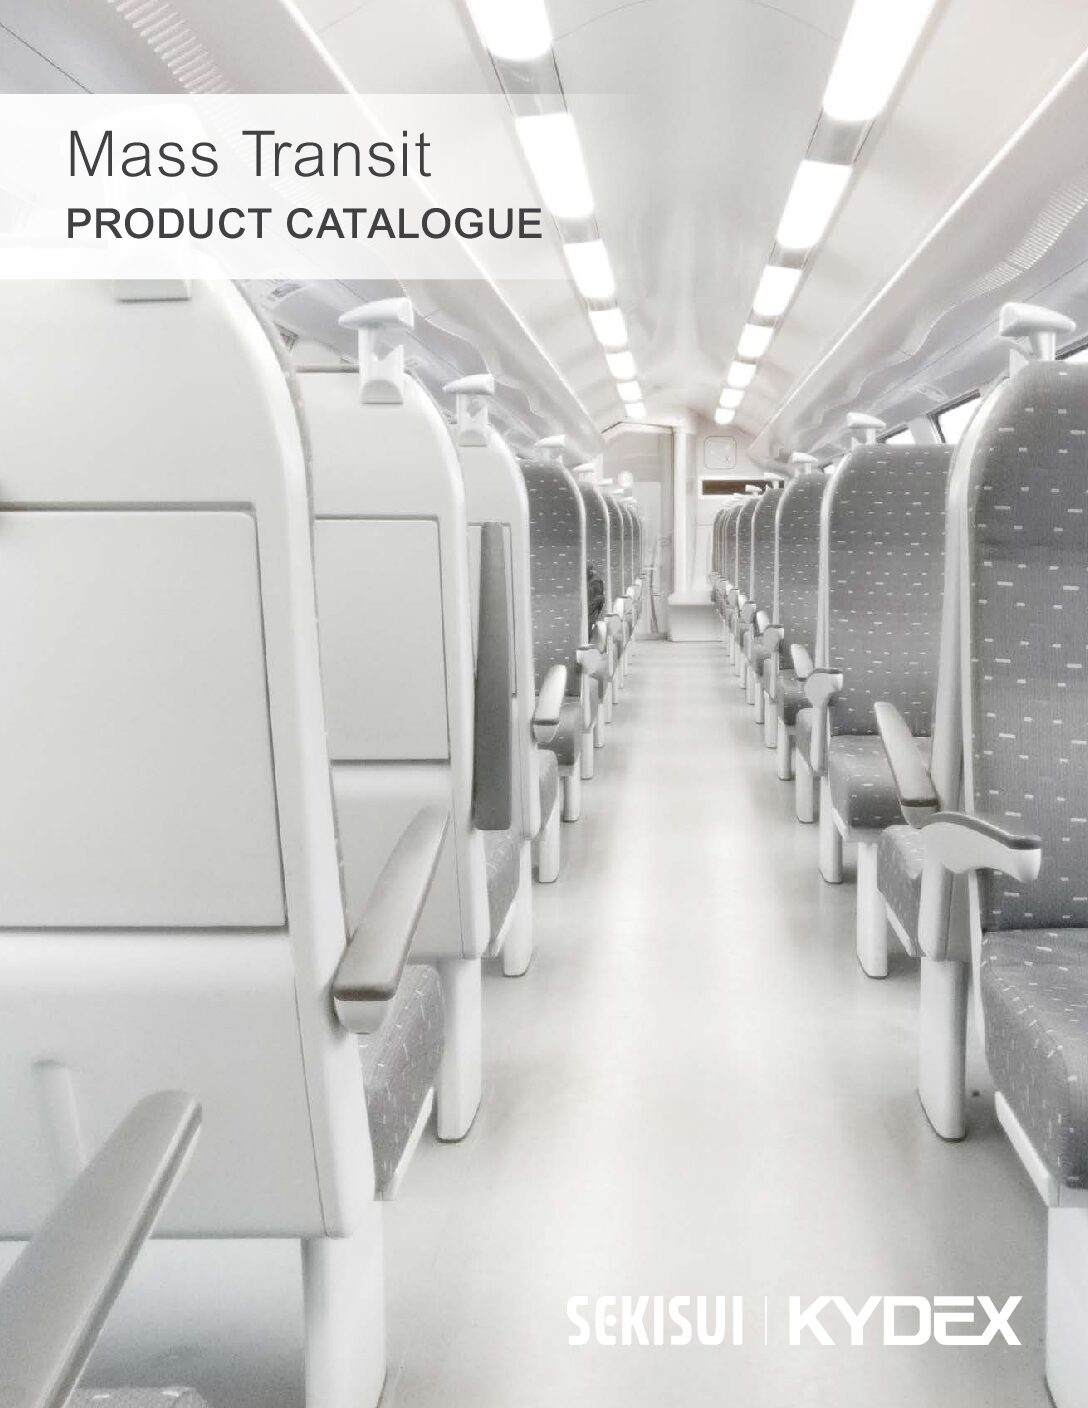 SEKISUI KYDEX, LLC: Mass Transit Product Catalogue